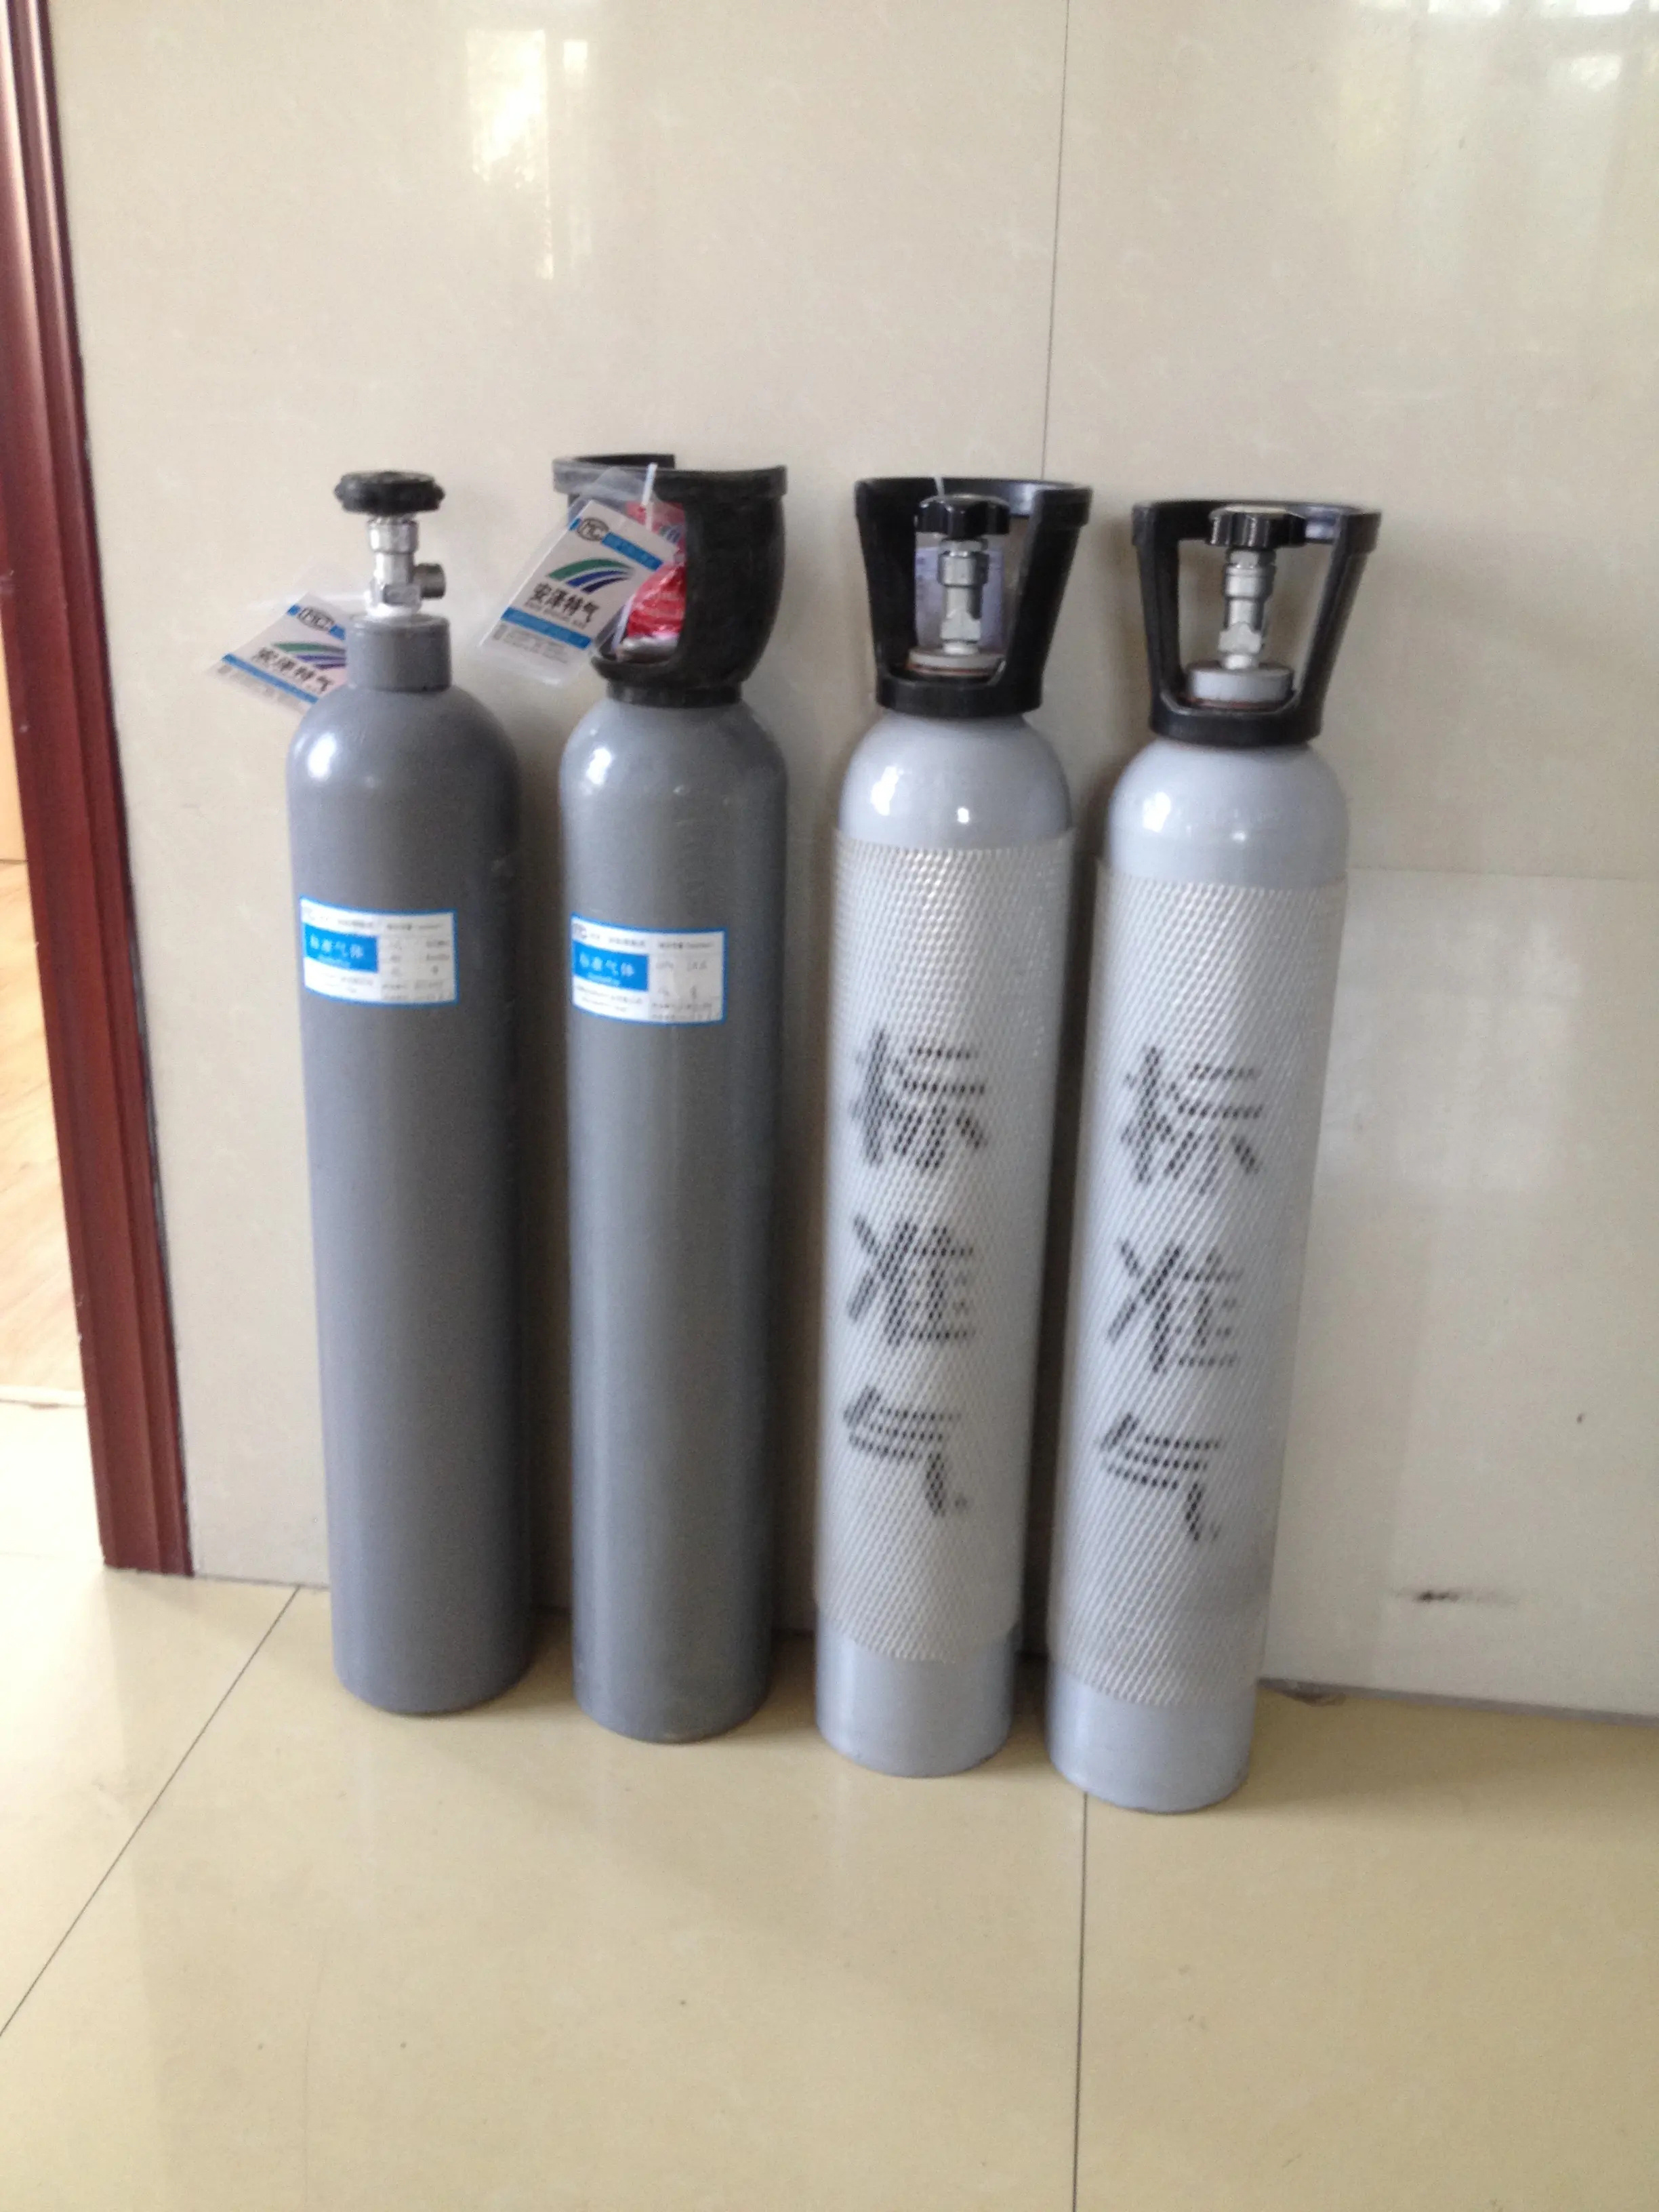 沧州地区标准气体8L环境运维气体8L化验分析检测气体8L